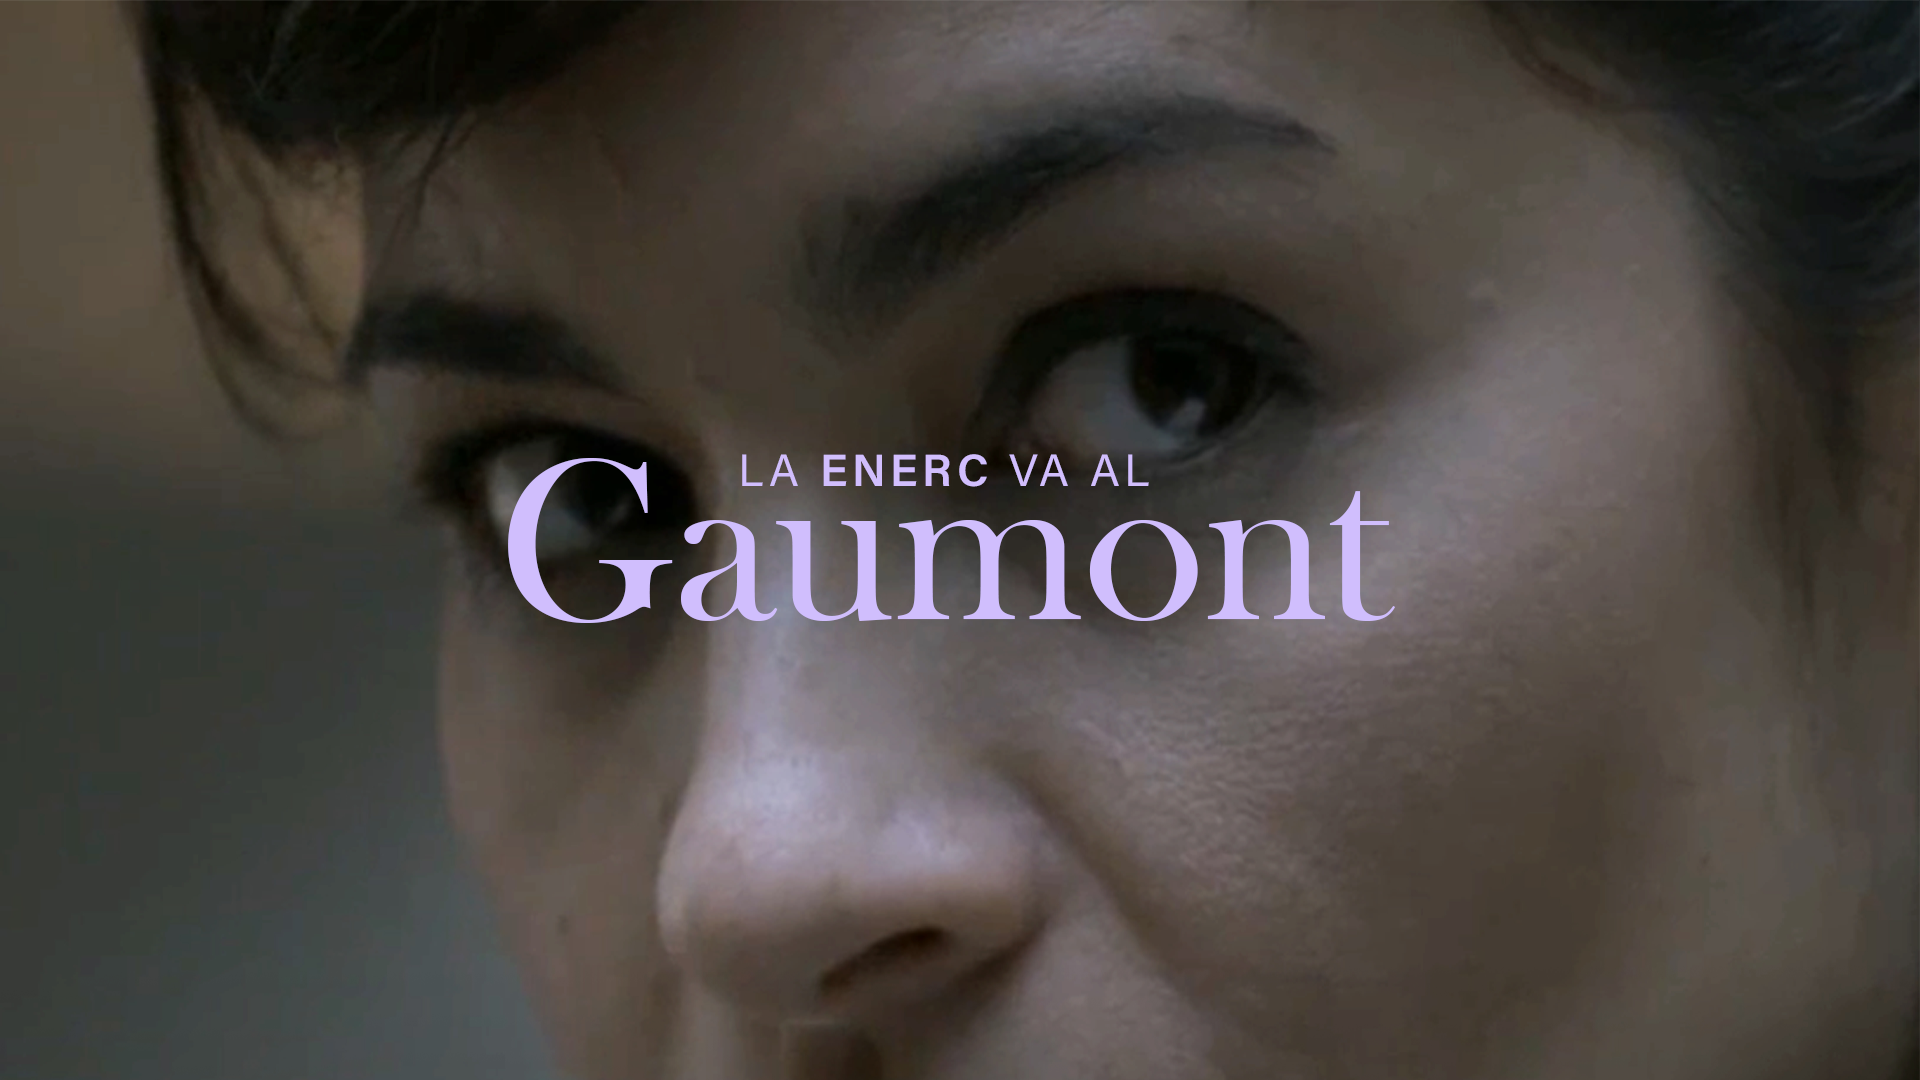 Los cortos de la ENERC van al Cine Gaumont